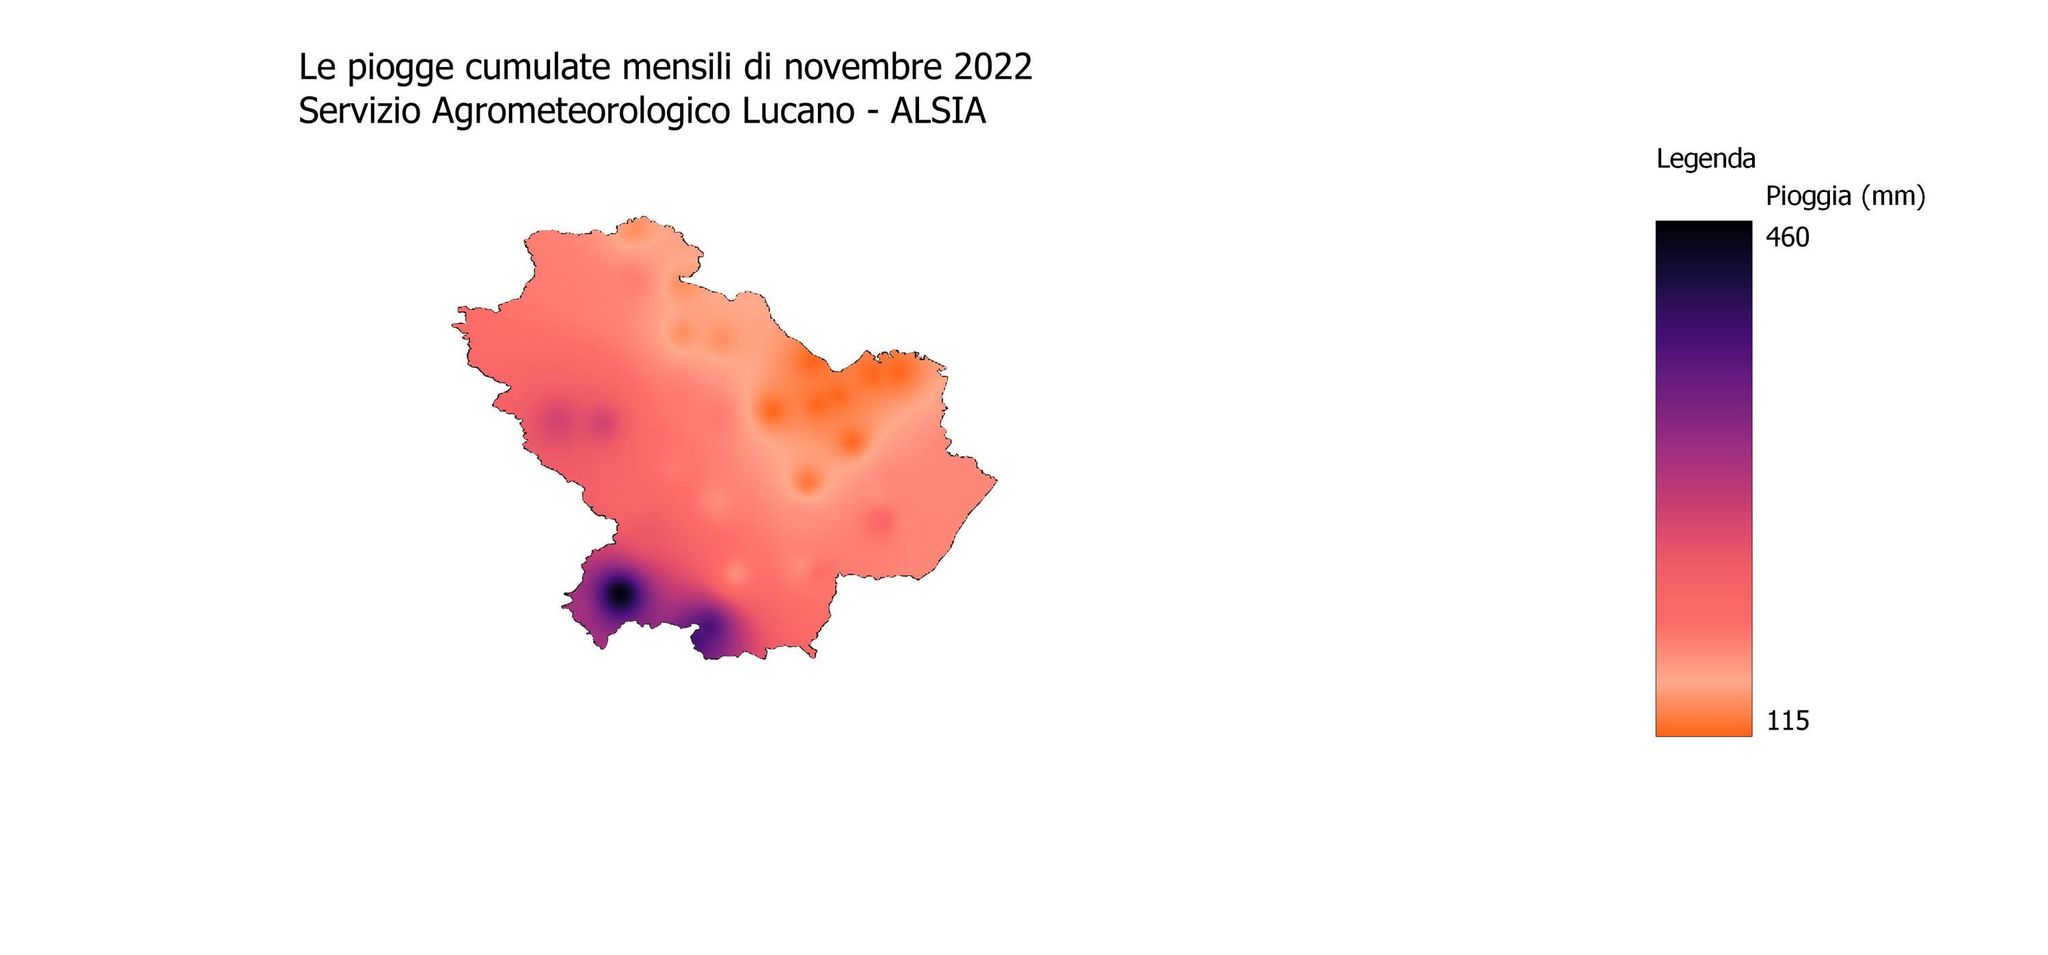 Figura 7. Mappa delle precipitazioni registrate in Basilicata in novembre 2022 (Fonte: Servizio Agrometeorologico Lucano, ALSIA)